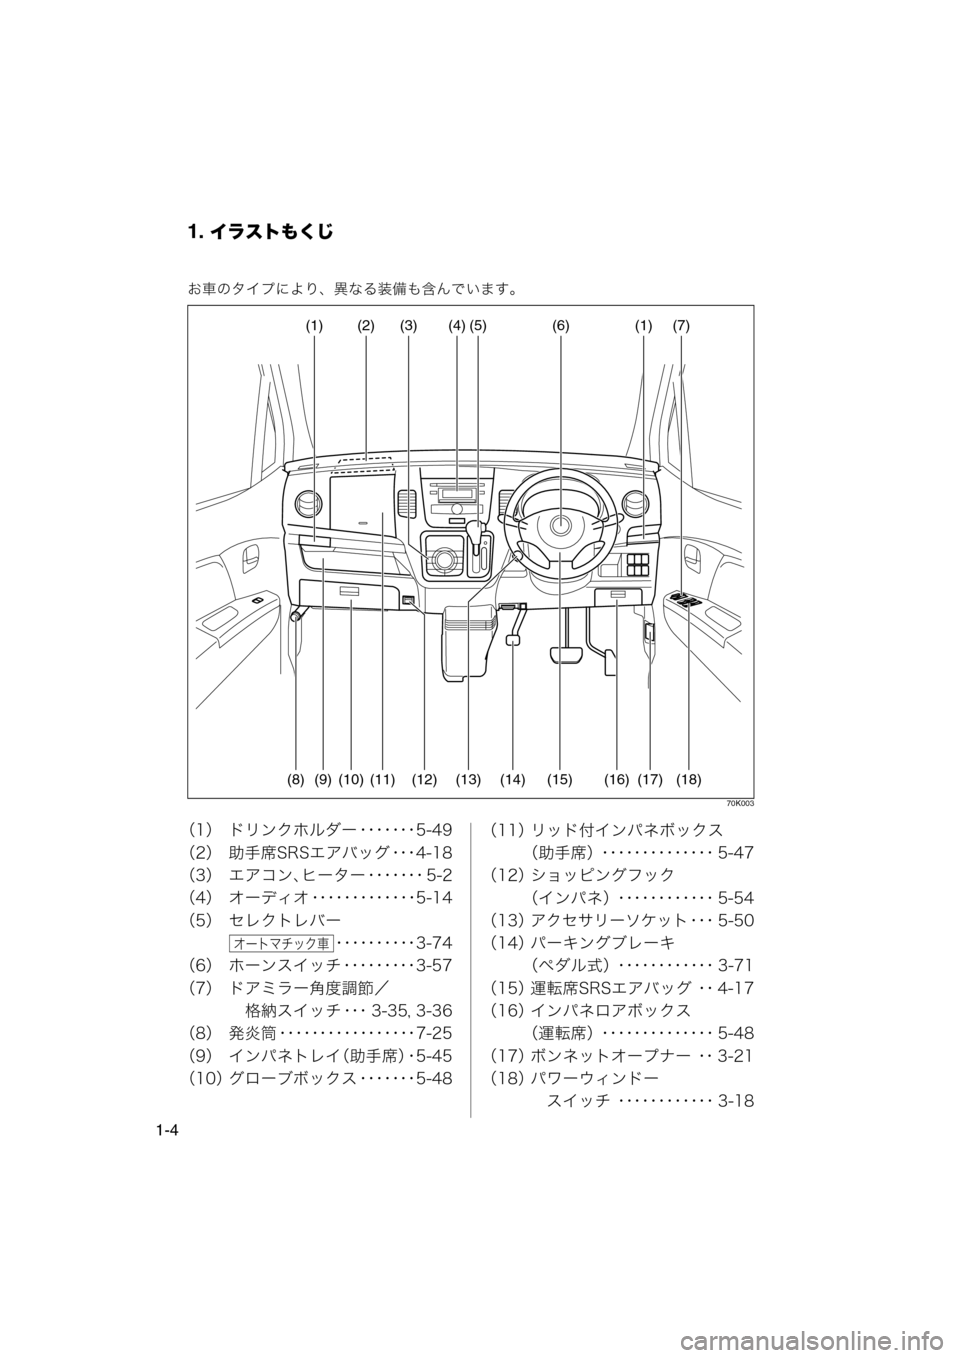 MAZDA MODEL AZ-WAGON 2012  ワゴン｜取扱説明書 (in Japanese) 1. イラストもくじ
1-4
お車のタイプにより、異なる装備も含んでいます。
70K003
（1） ドリンクホルダー ･･･････5-49
（2） 助手席SRSエアバッグ